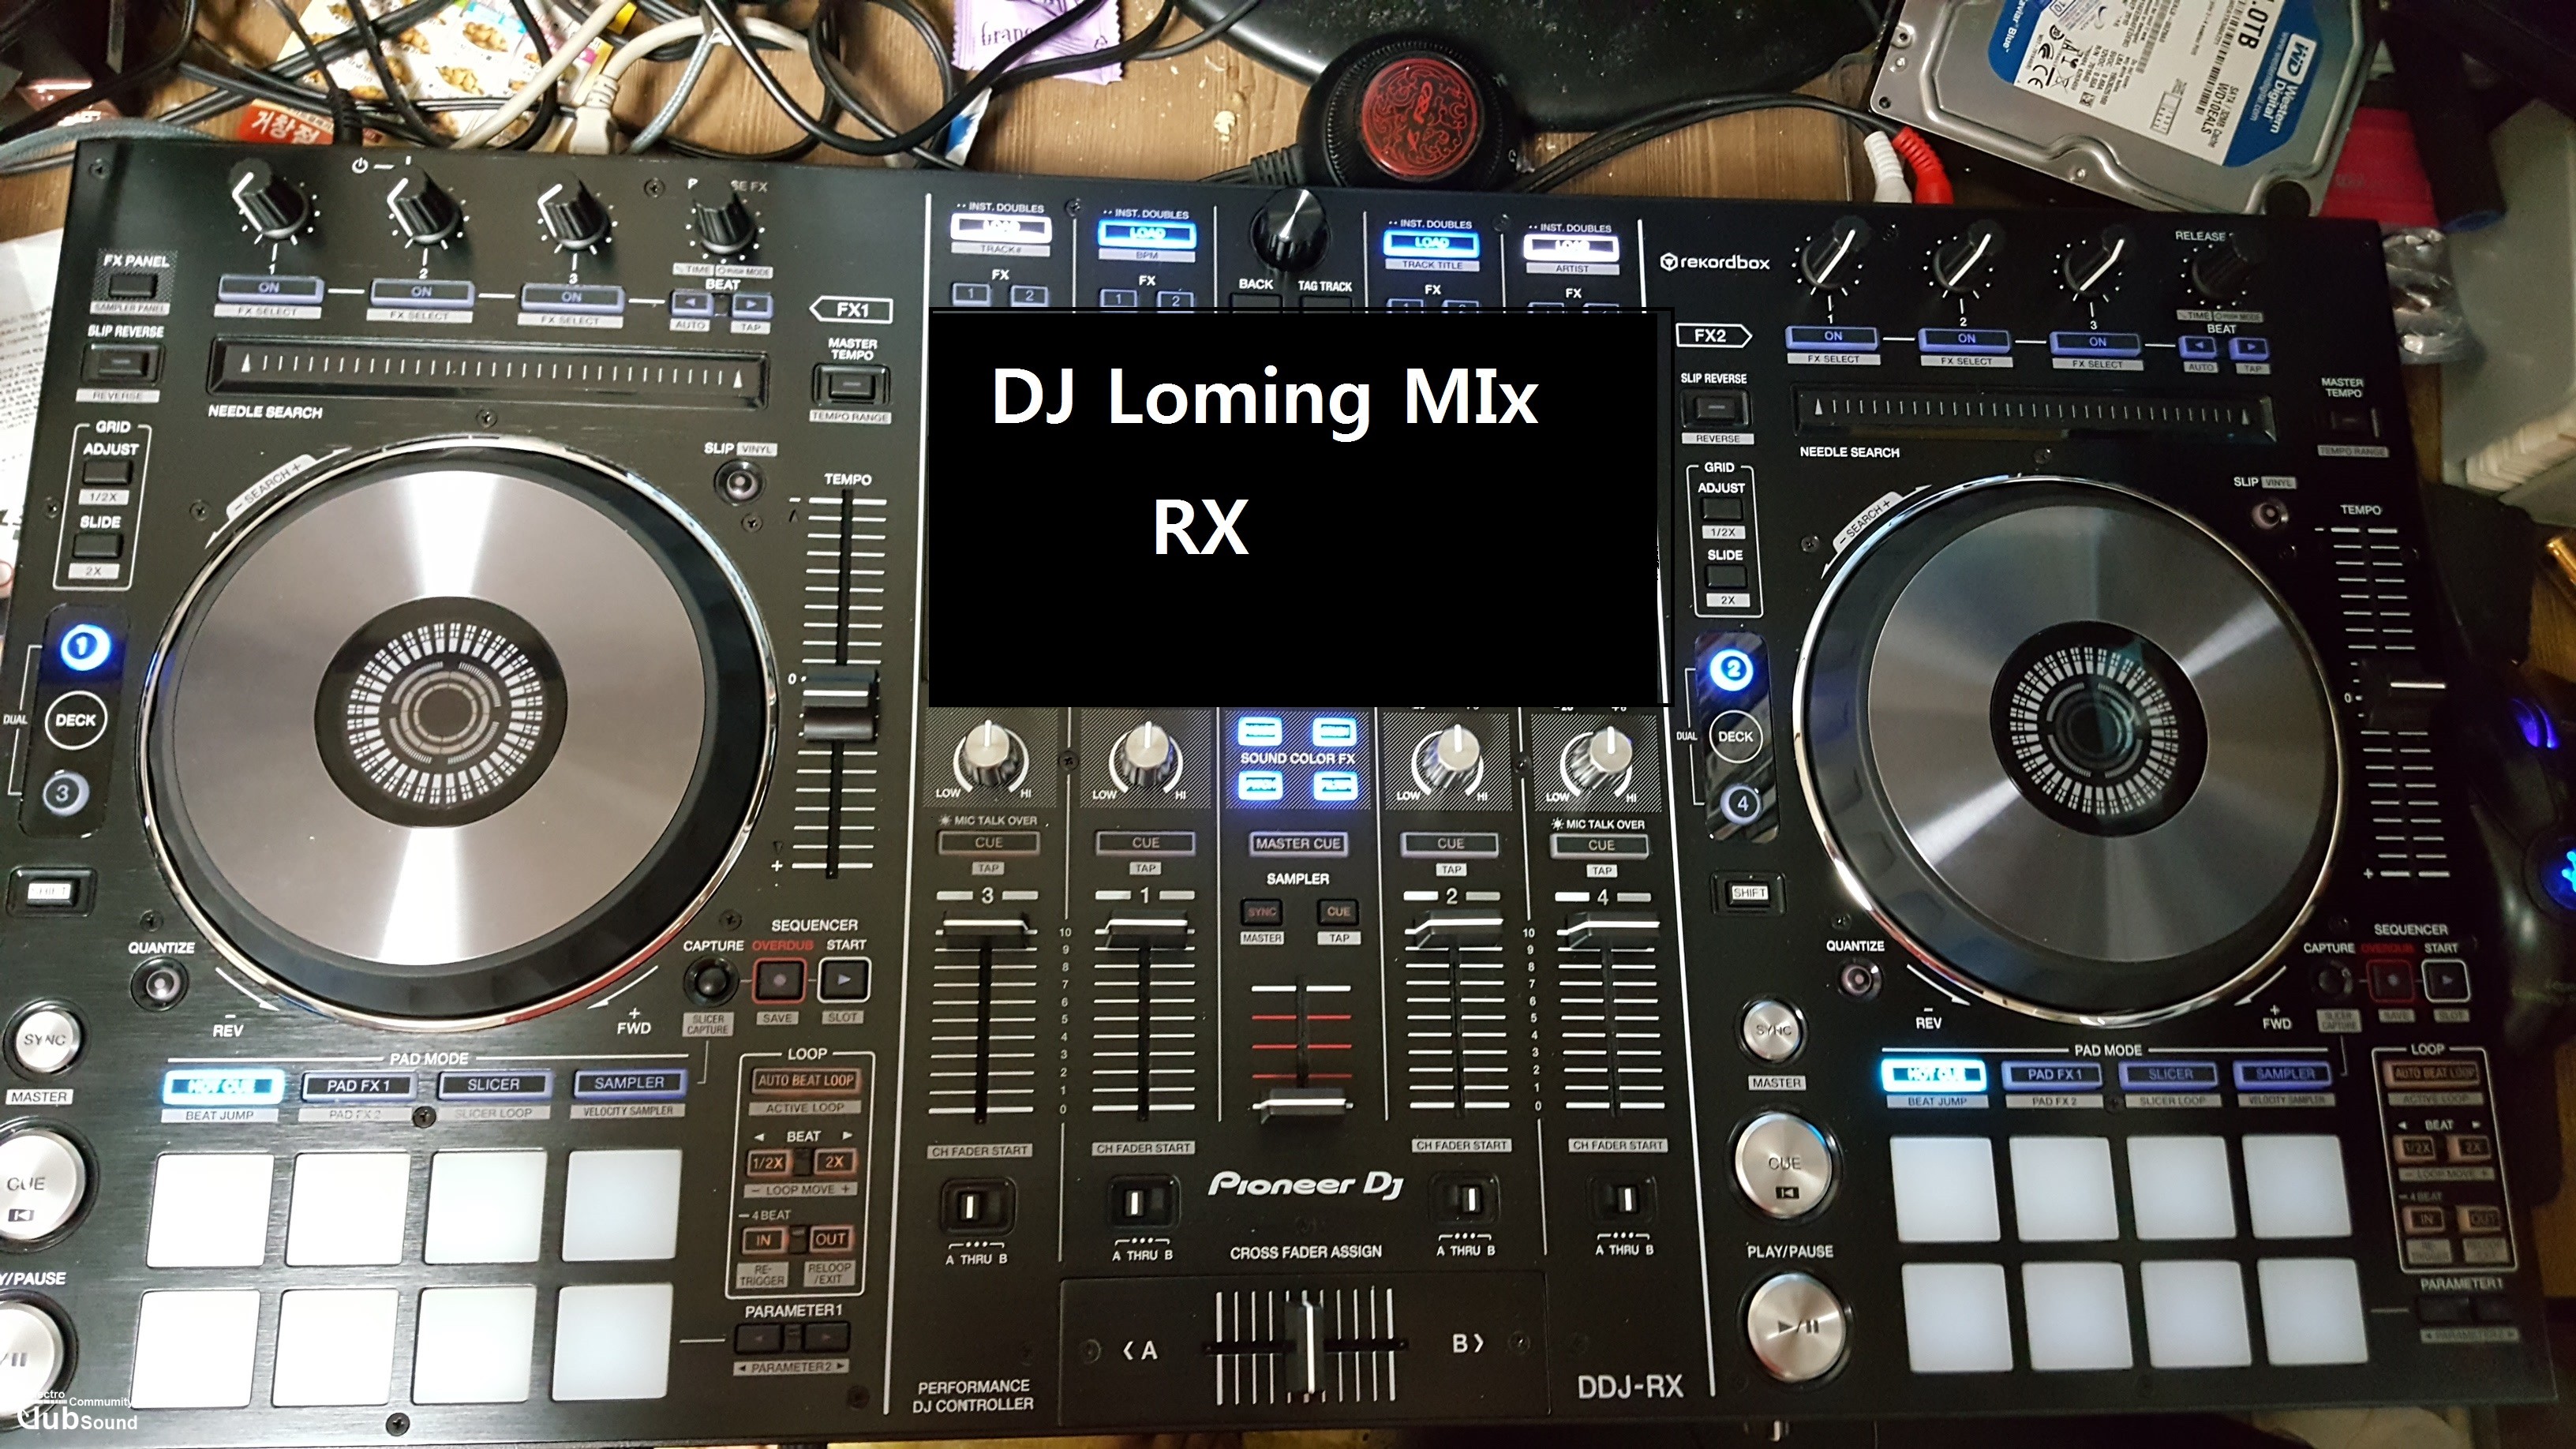 DJ Loming mix(RX).jpg : DJ Loming U3(유튜브버전)+DJ Loming RX29~RX33